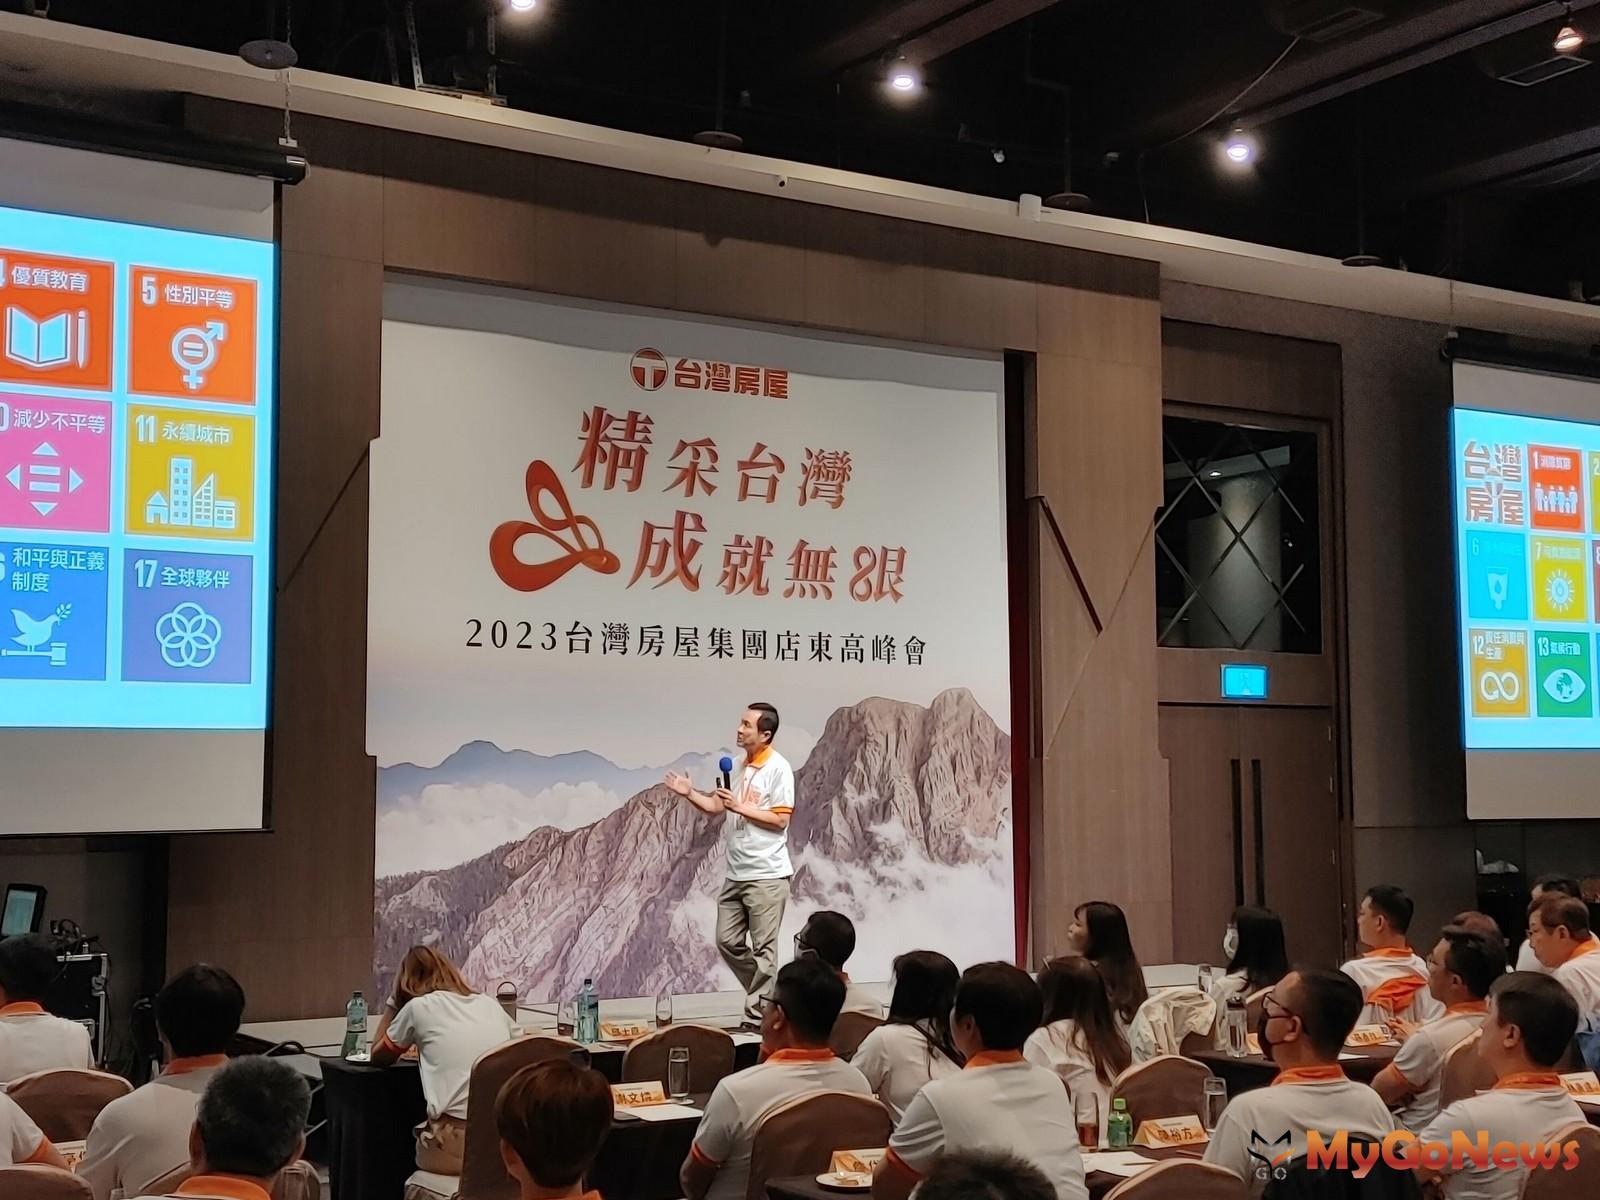 台灣房屋集團總裁彭培業在大會中分享，集團的發展與聯合國ESG+所倡議的永續行動力一致。(圖/台灣房屋) MyGoNews房地產新聞 市場快訊